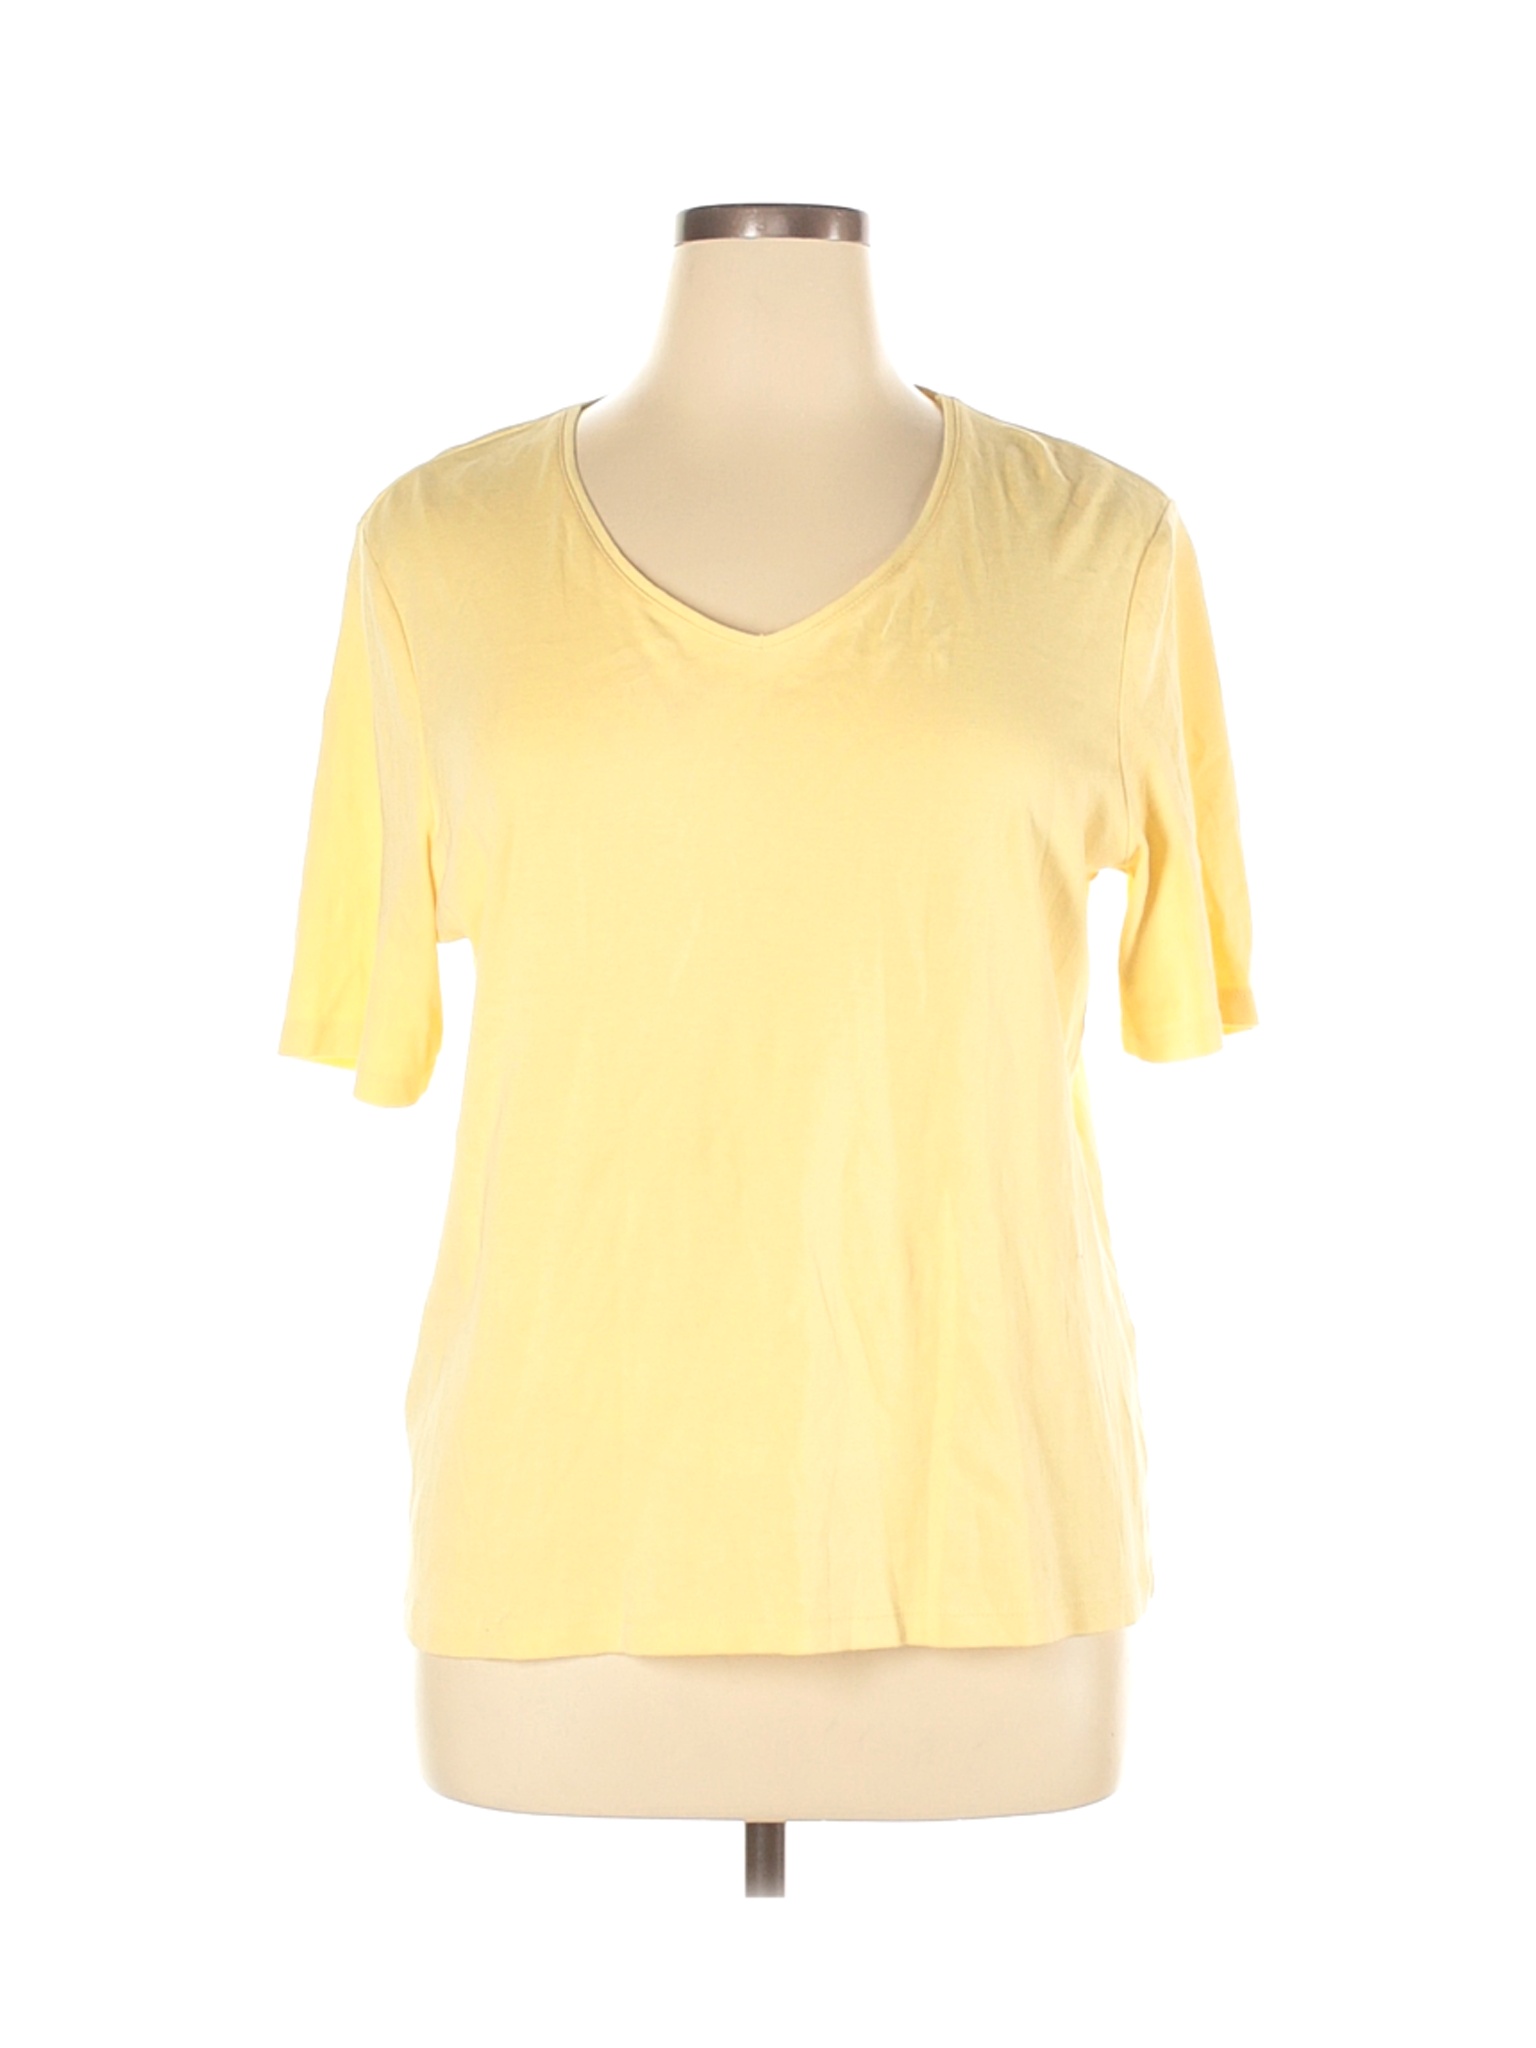 Chico's Women Yellow Short Sleeve T-Shirt XL | eBay